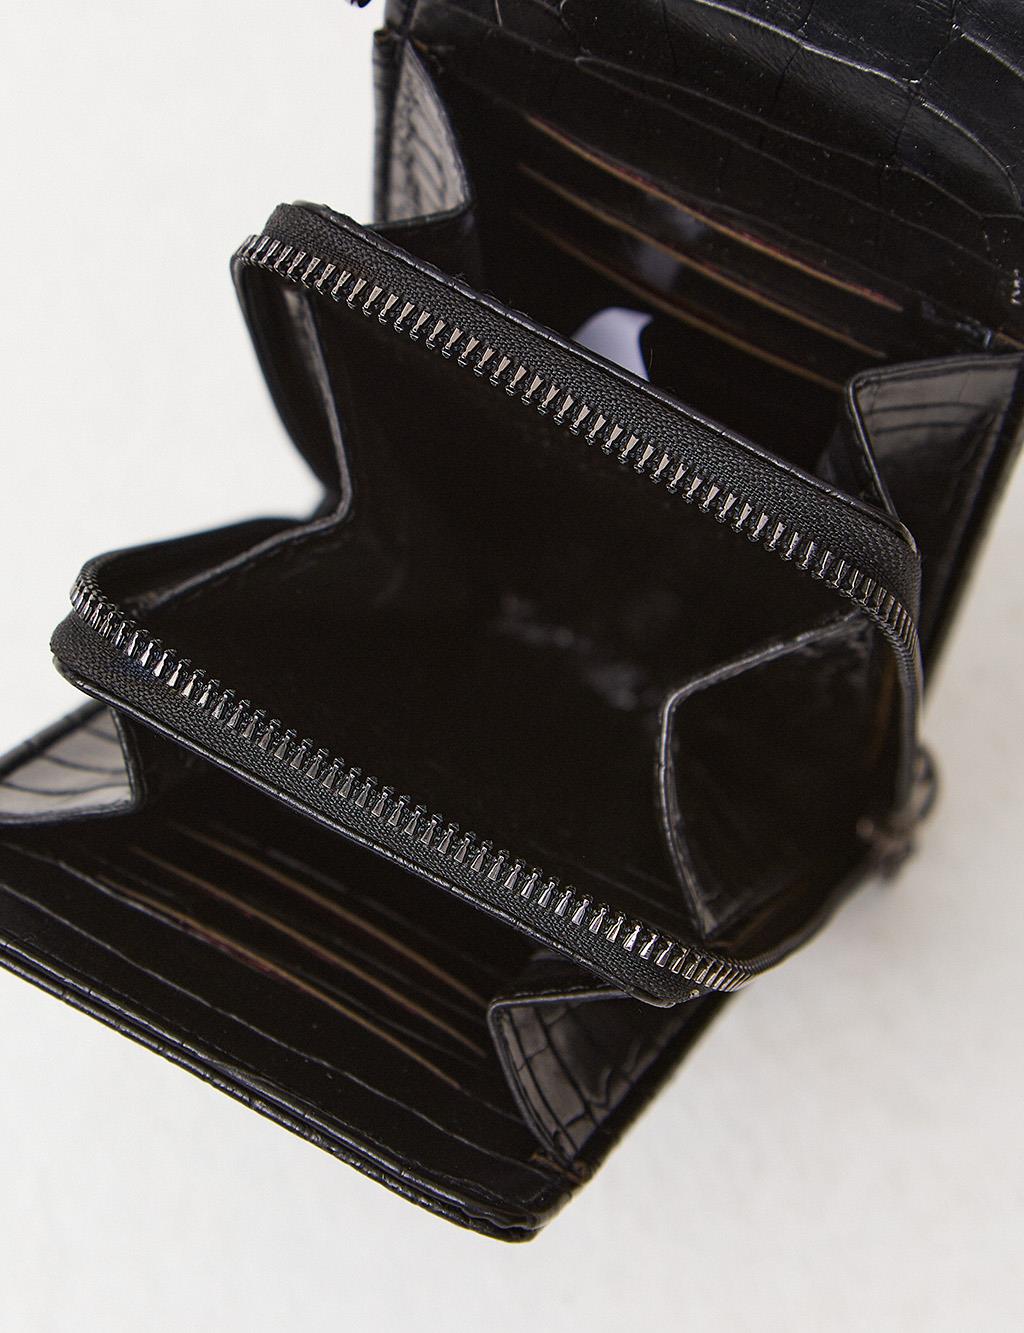 Croco Patterned Multifunctional Bag Wallet Black